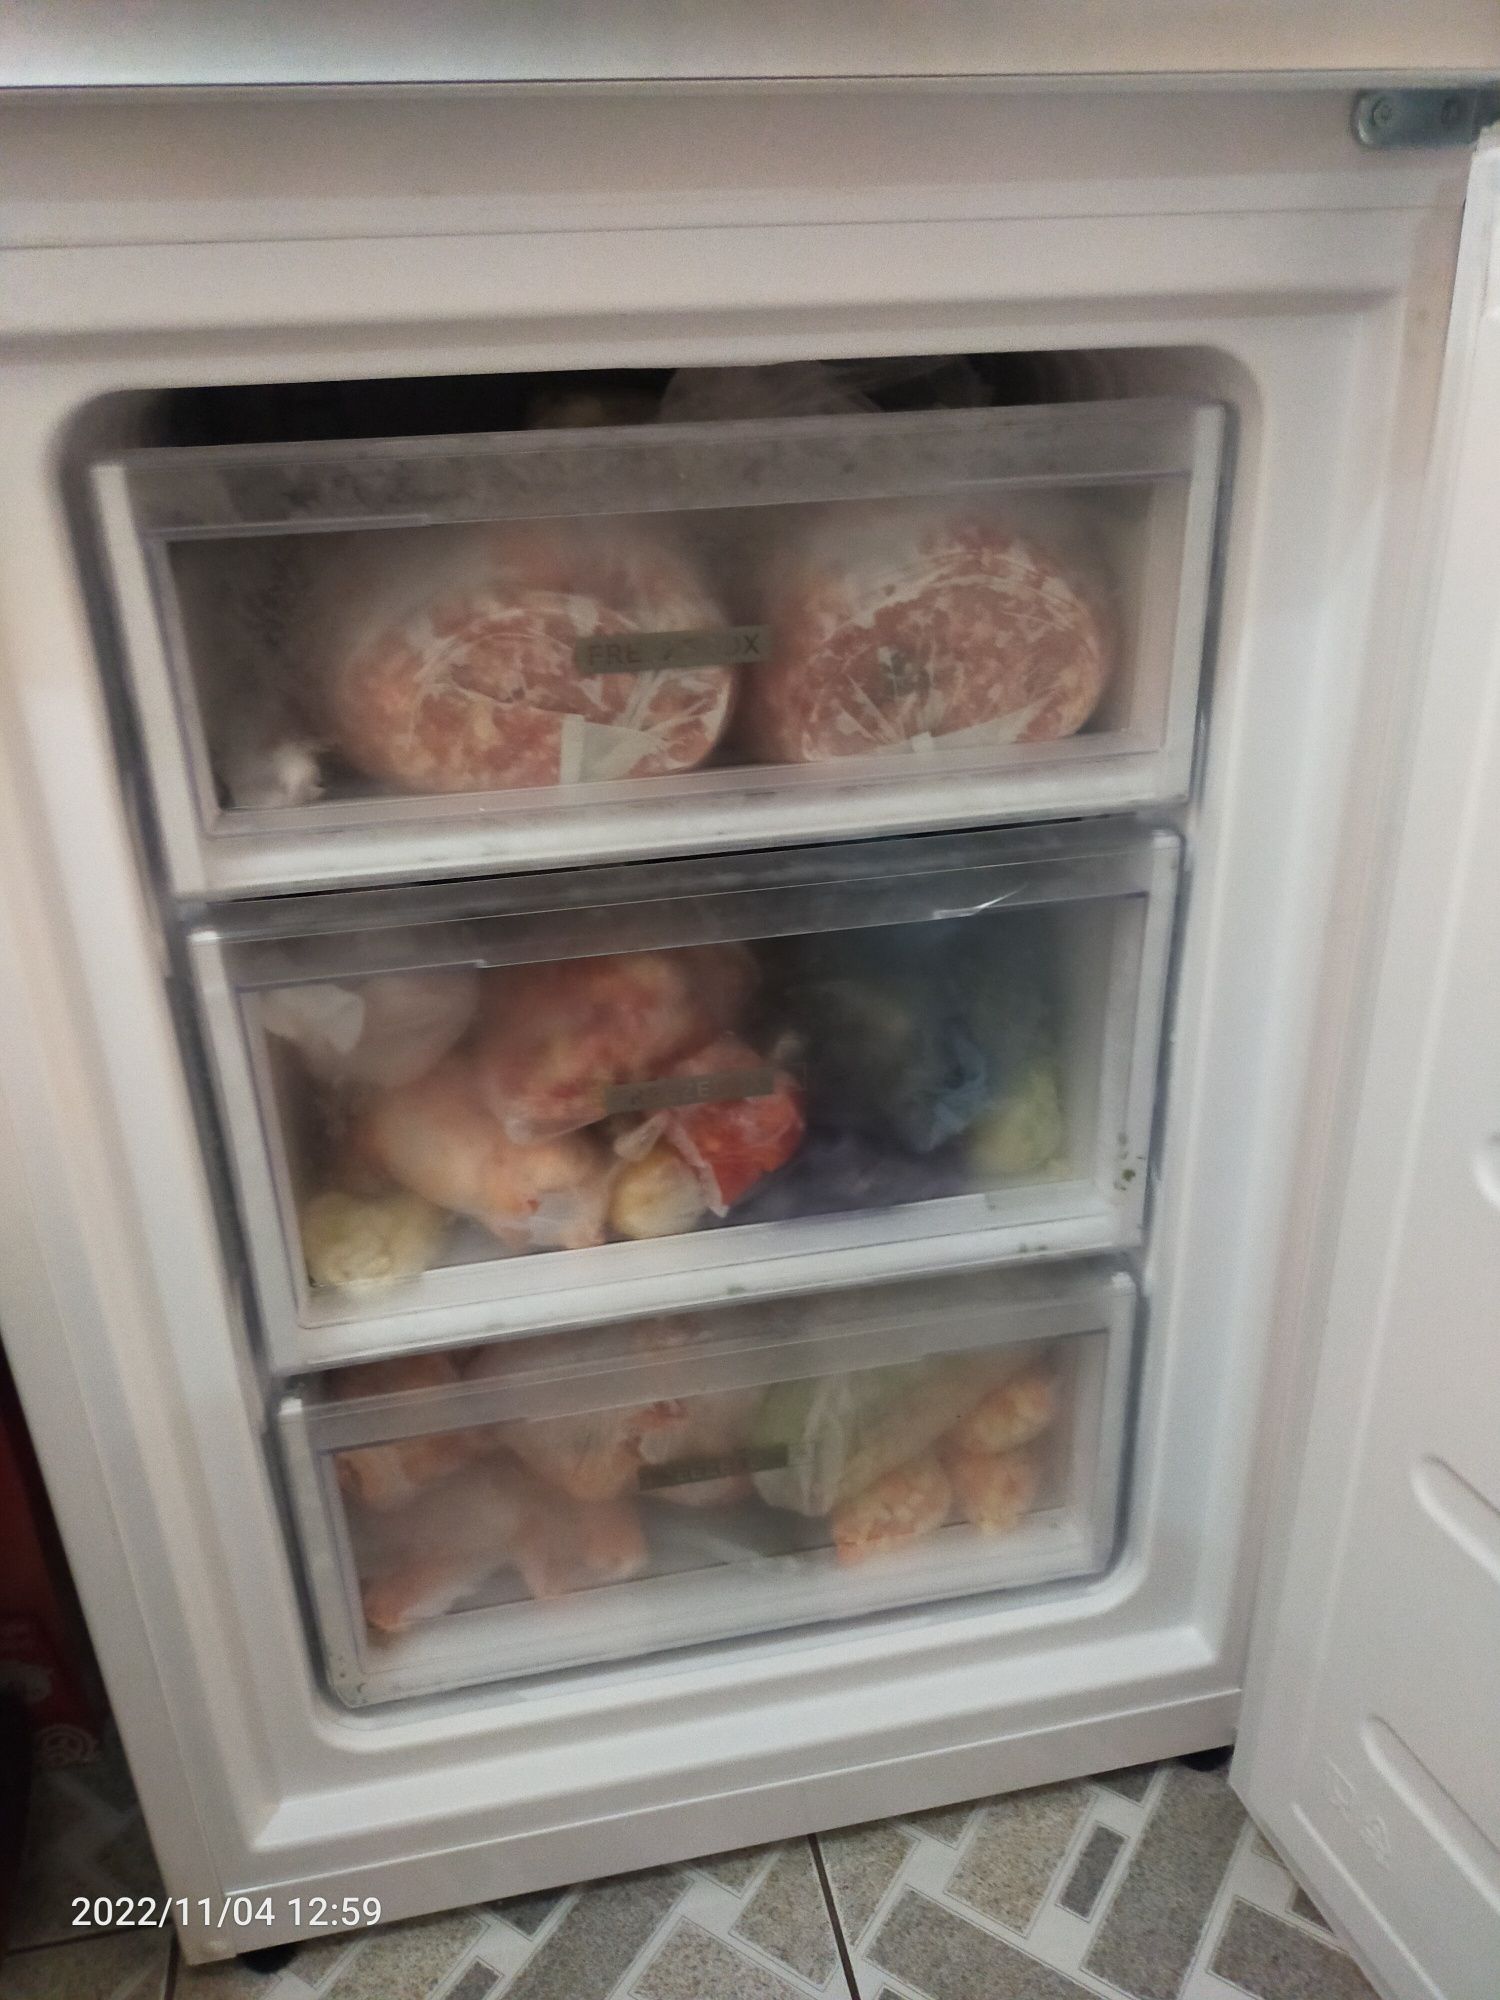 Vând frigider  in stare buna de funcționare plus garanție